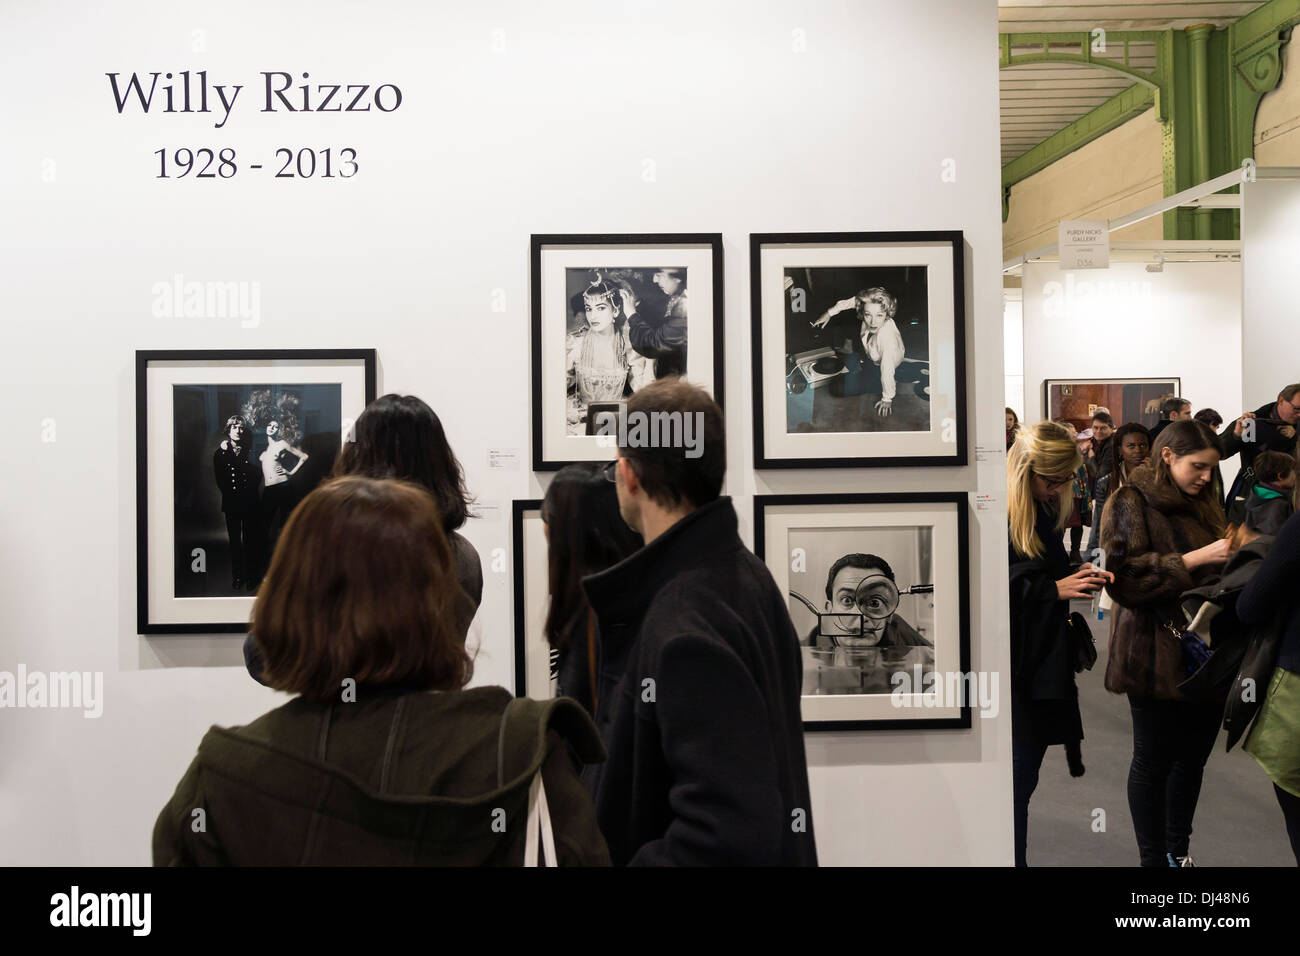 Stehen Sie auf der Kunstmesse in le Grand Palais in Paris, Frankreich Paris Foto 2013. Besucher suchen Willy Rizzo Fotografie. Stockfoto